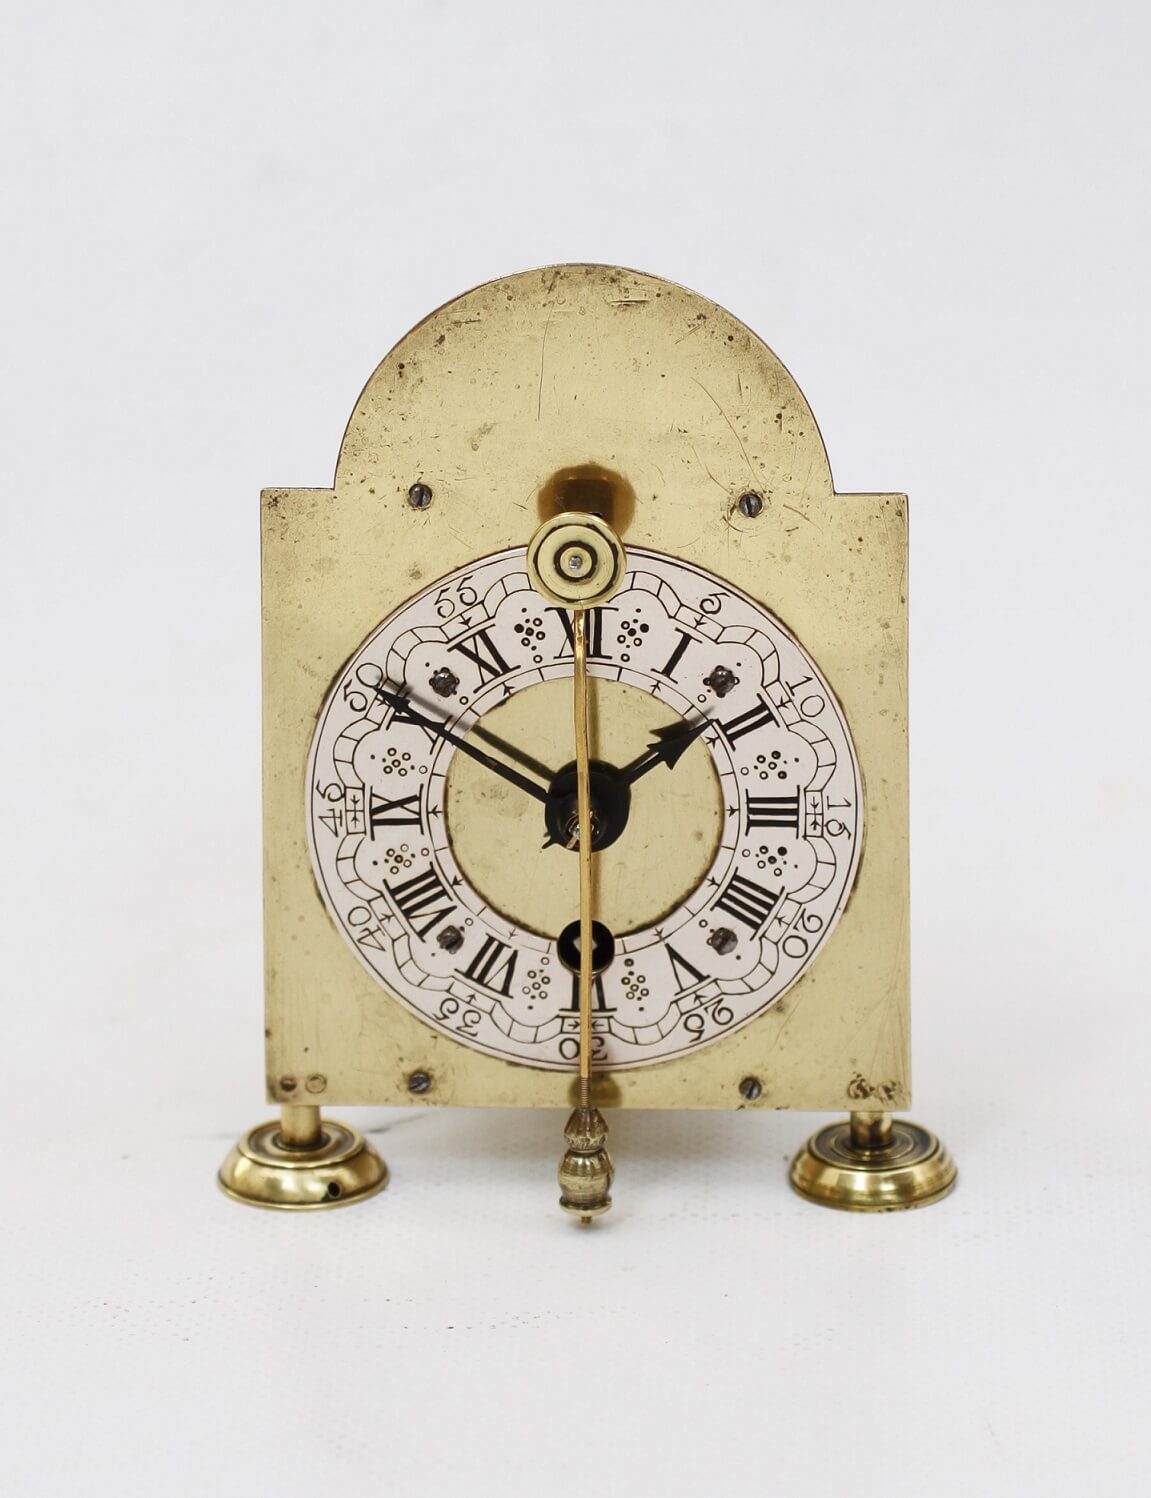 miniature German brass wall zappler timepiece circa 1770